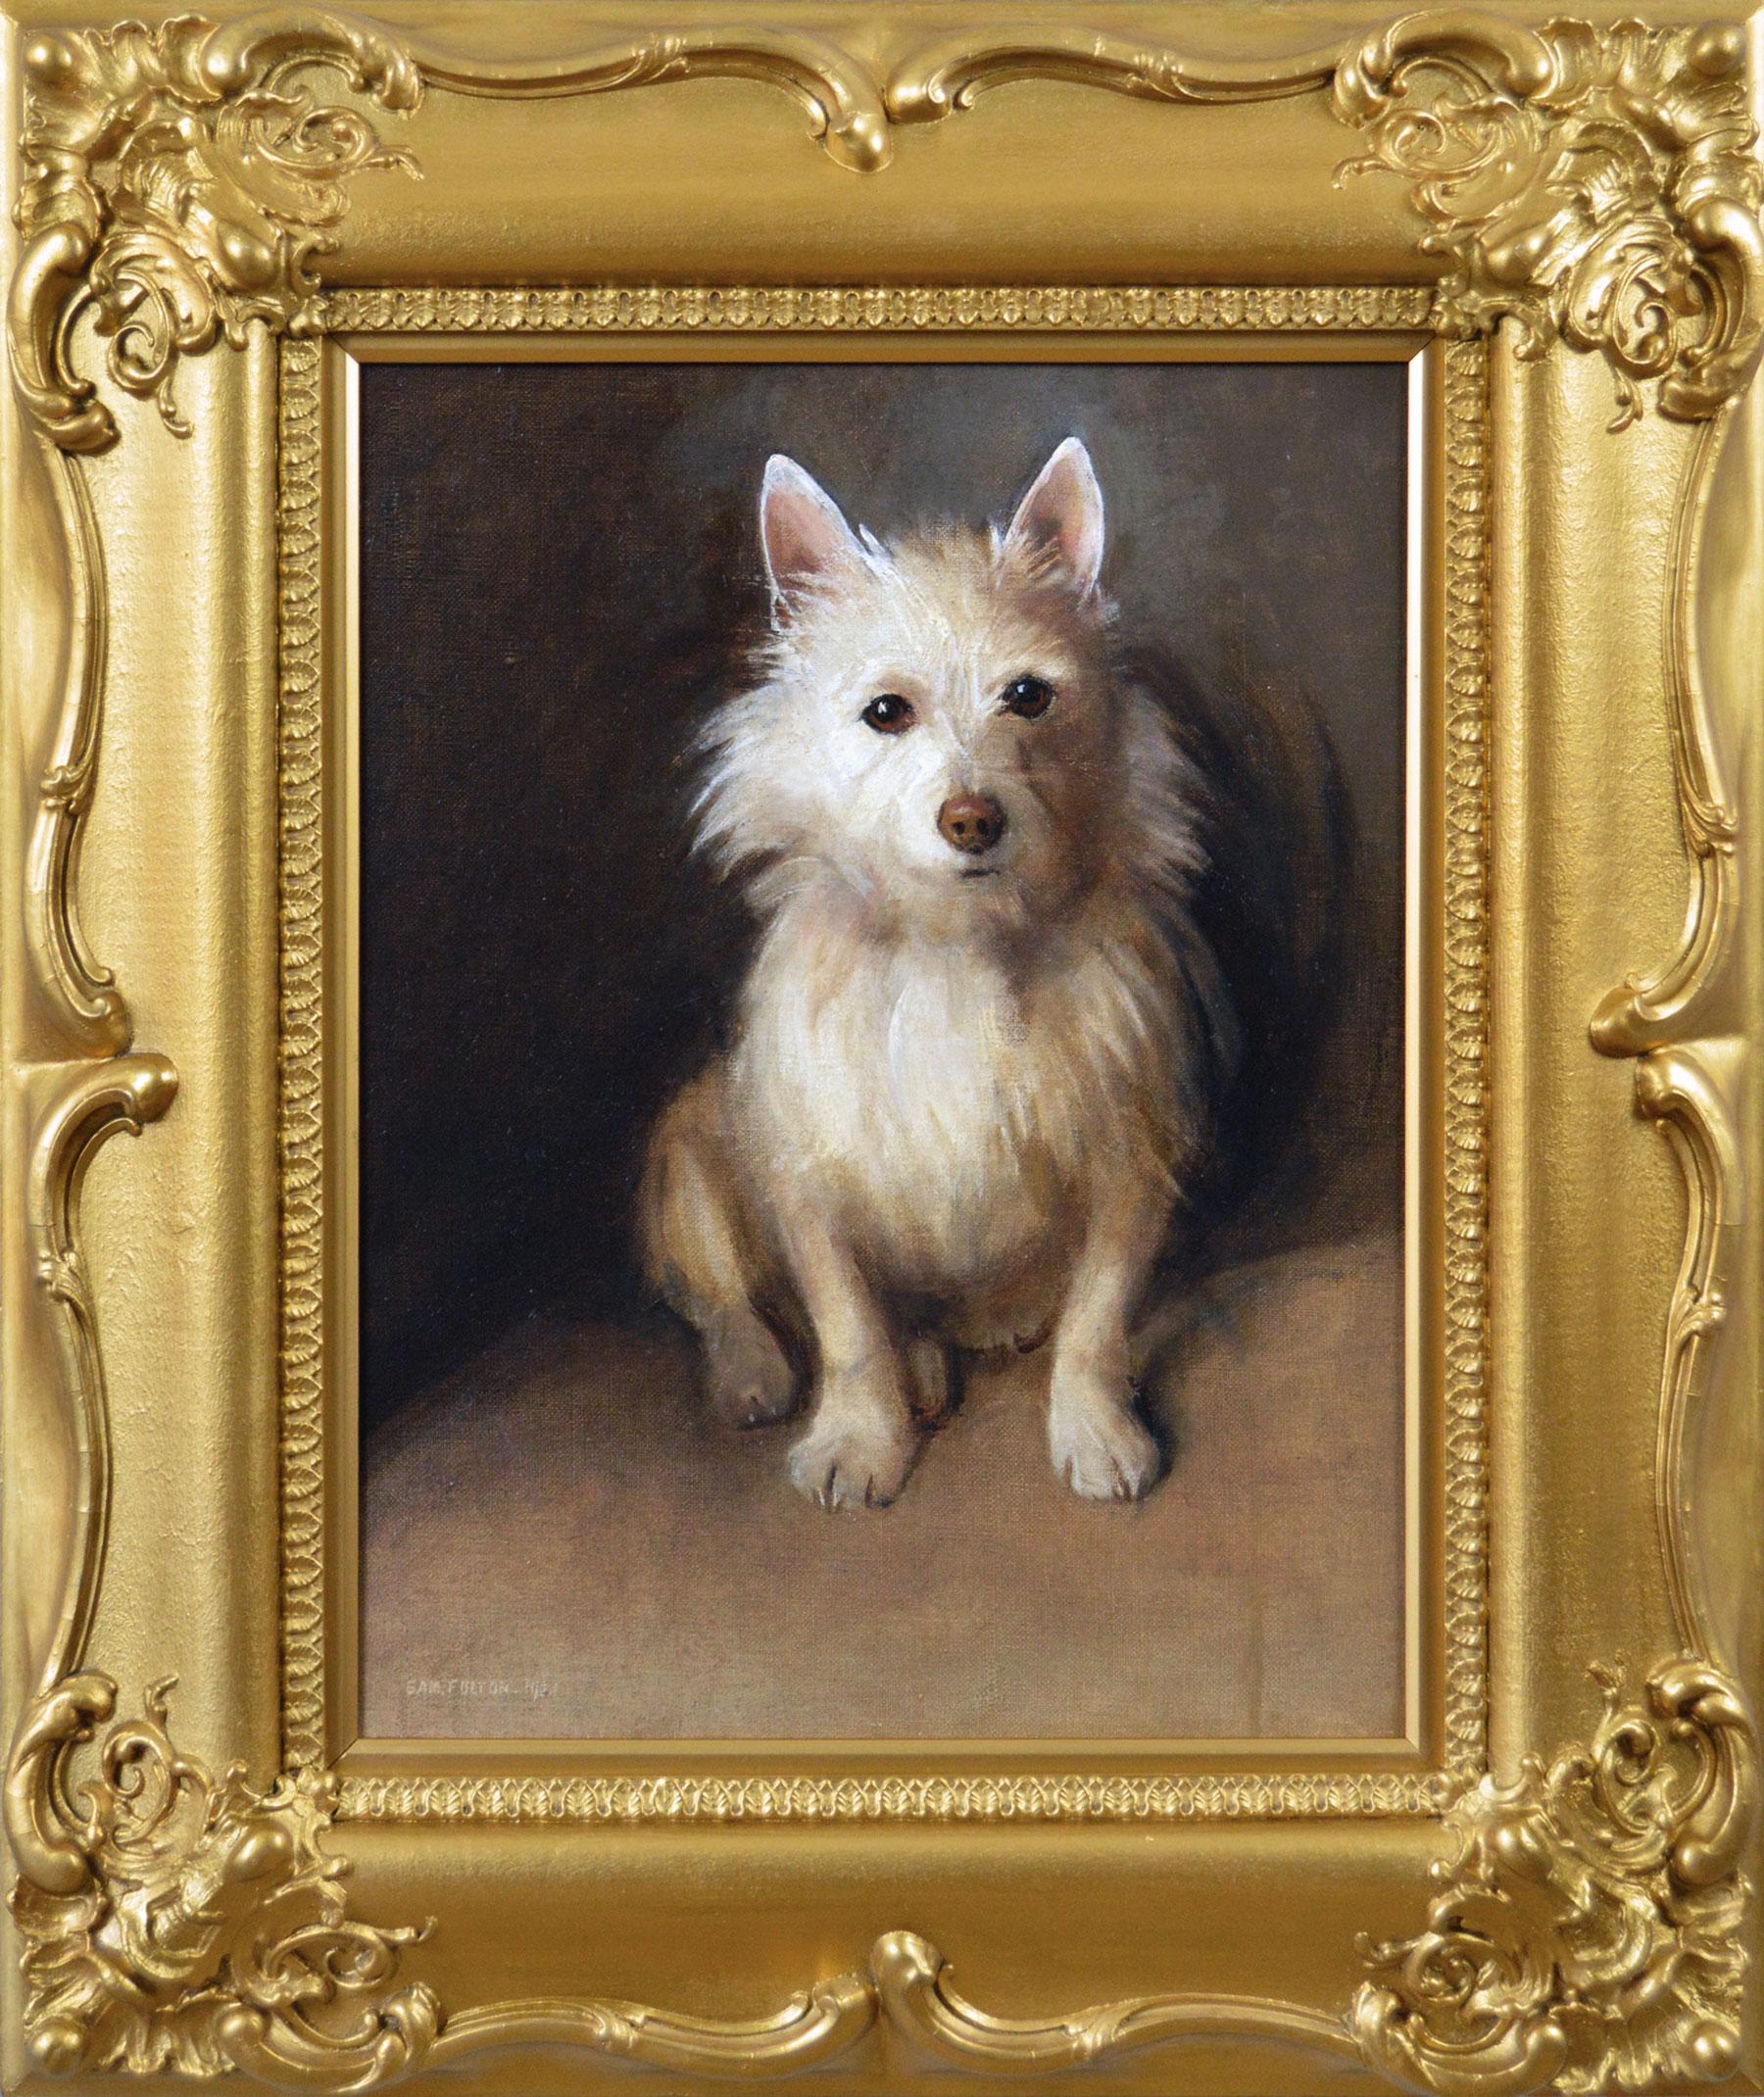 Animal Painting Samuel Fulton - Peinture à l'huile d'animal de genre d'un chien terrier des Highlands de l'Ouest